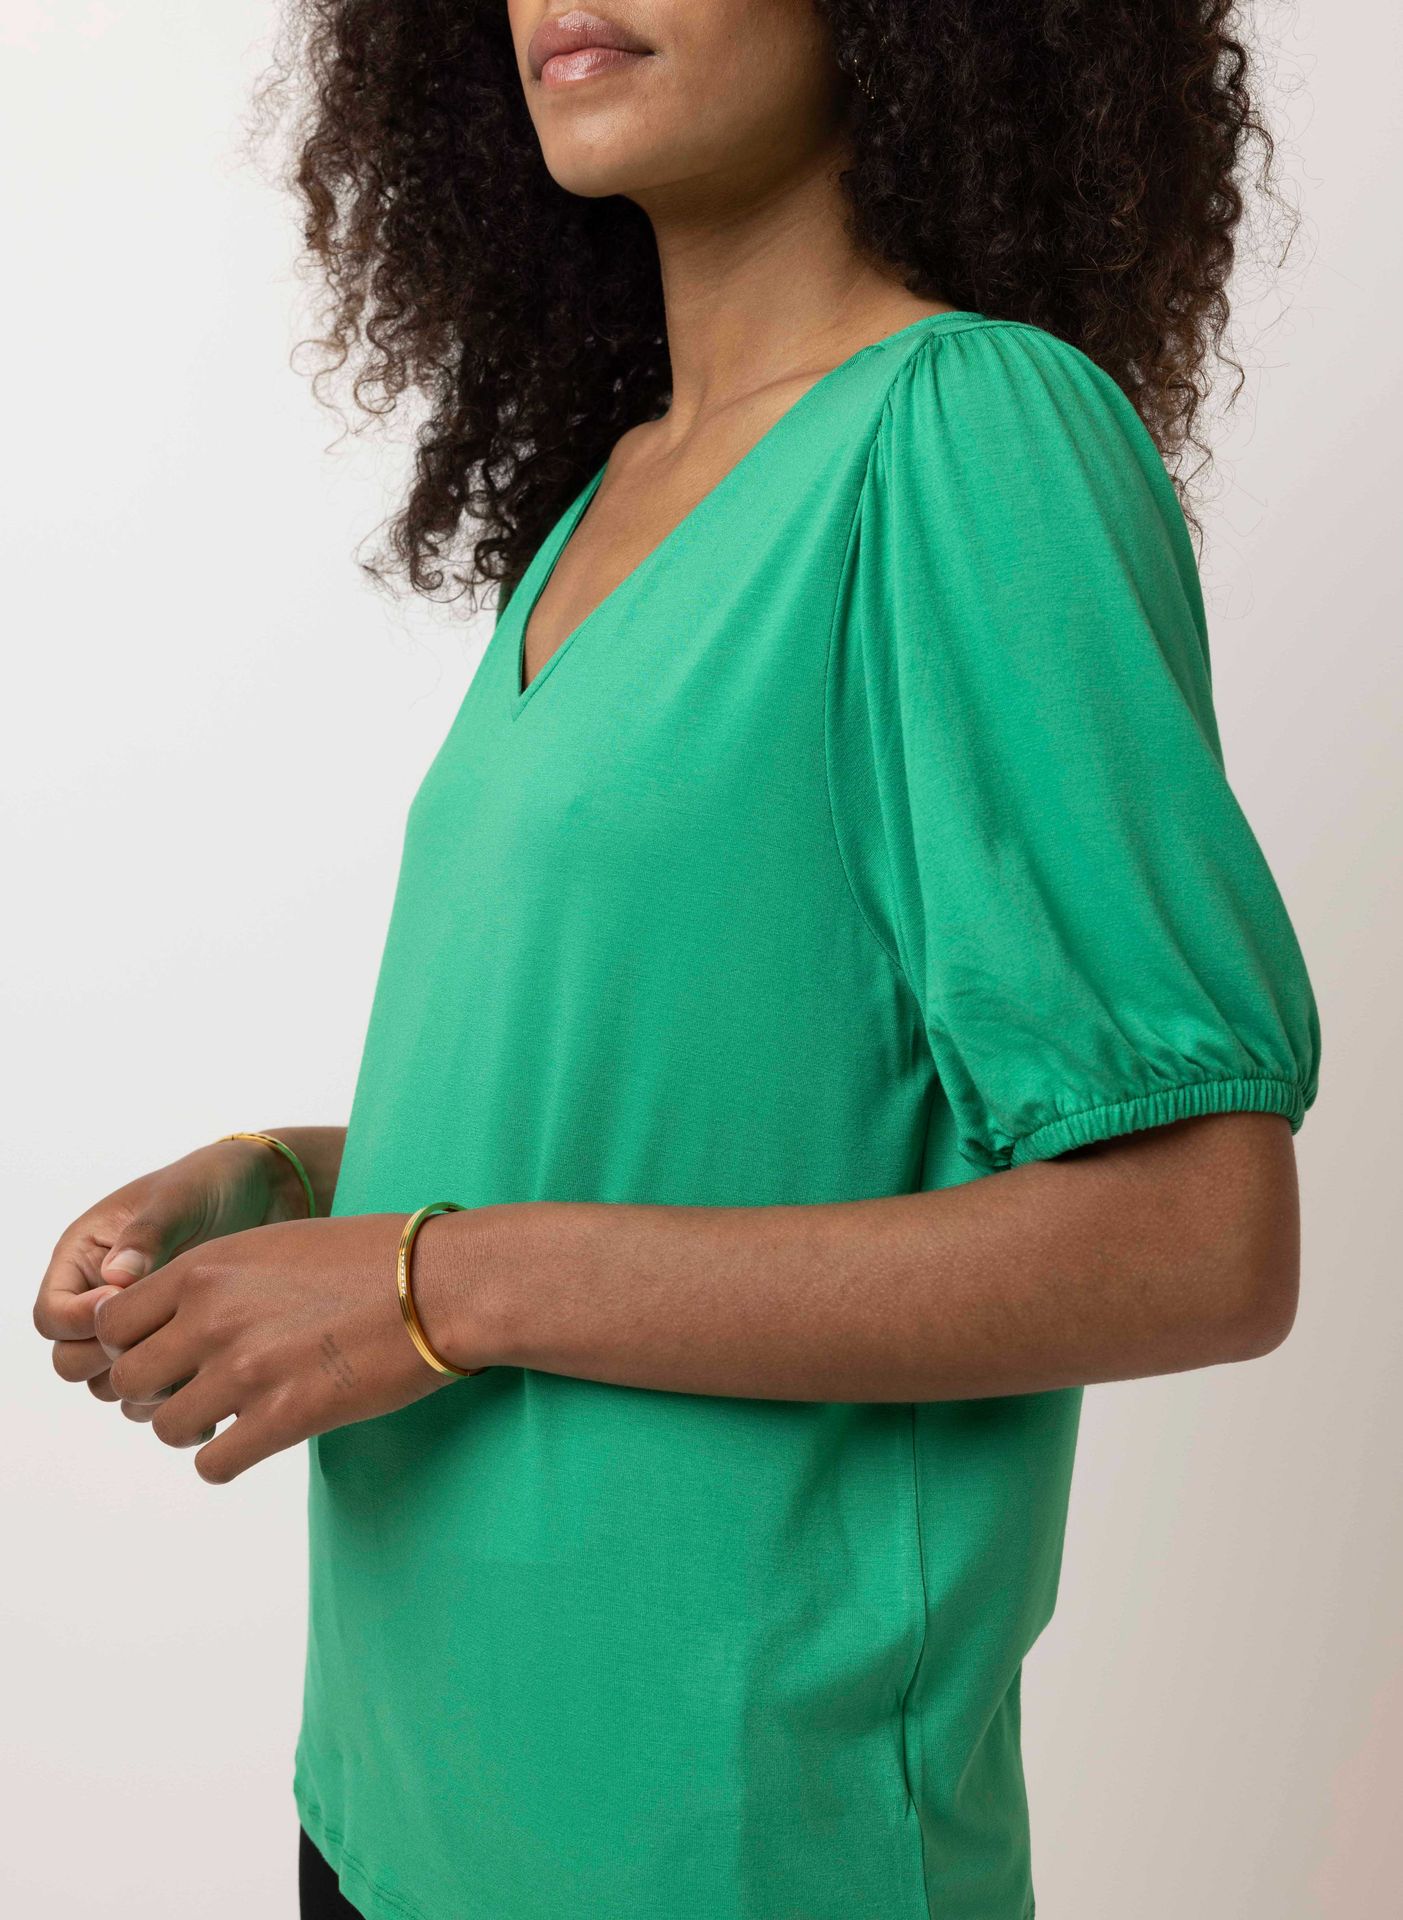 Norah Groen shirt green 214524-500